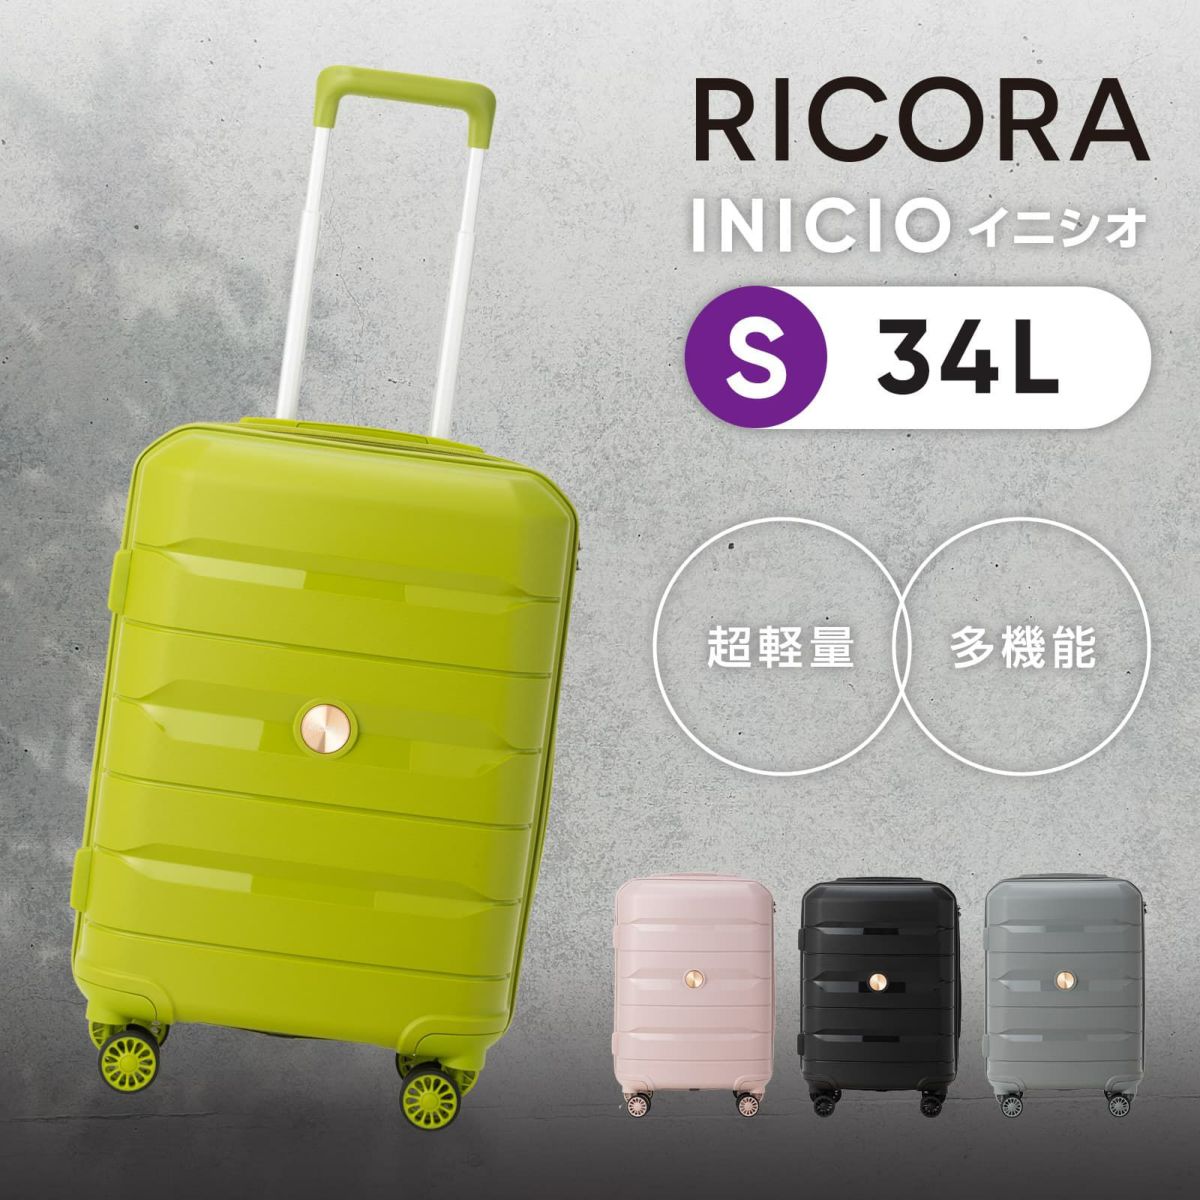 RICORA リコラ】 INICIO スーツケース 機内持ち込み Sサイズ 34L 